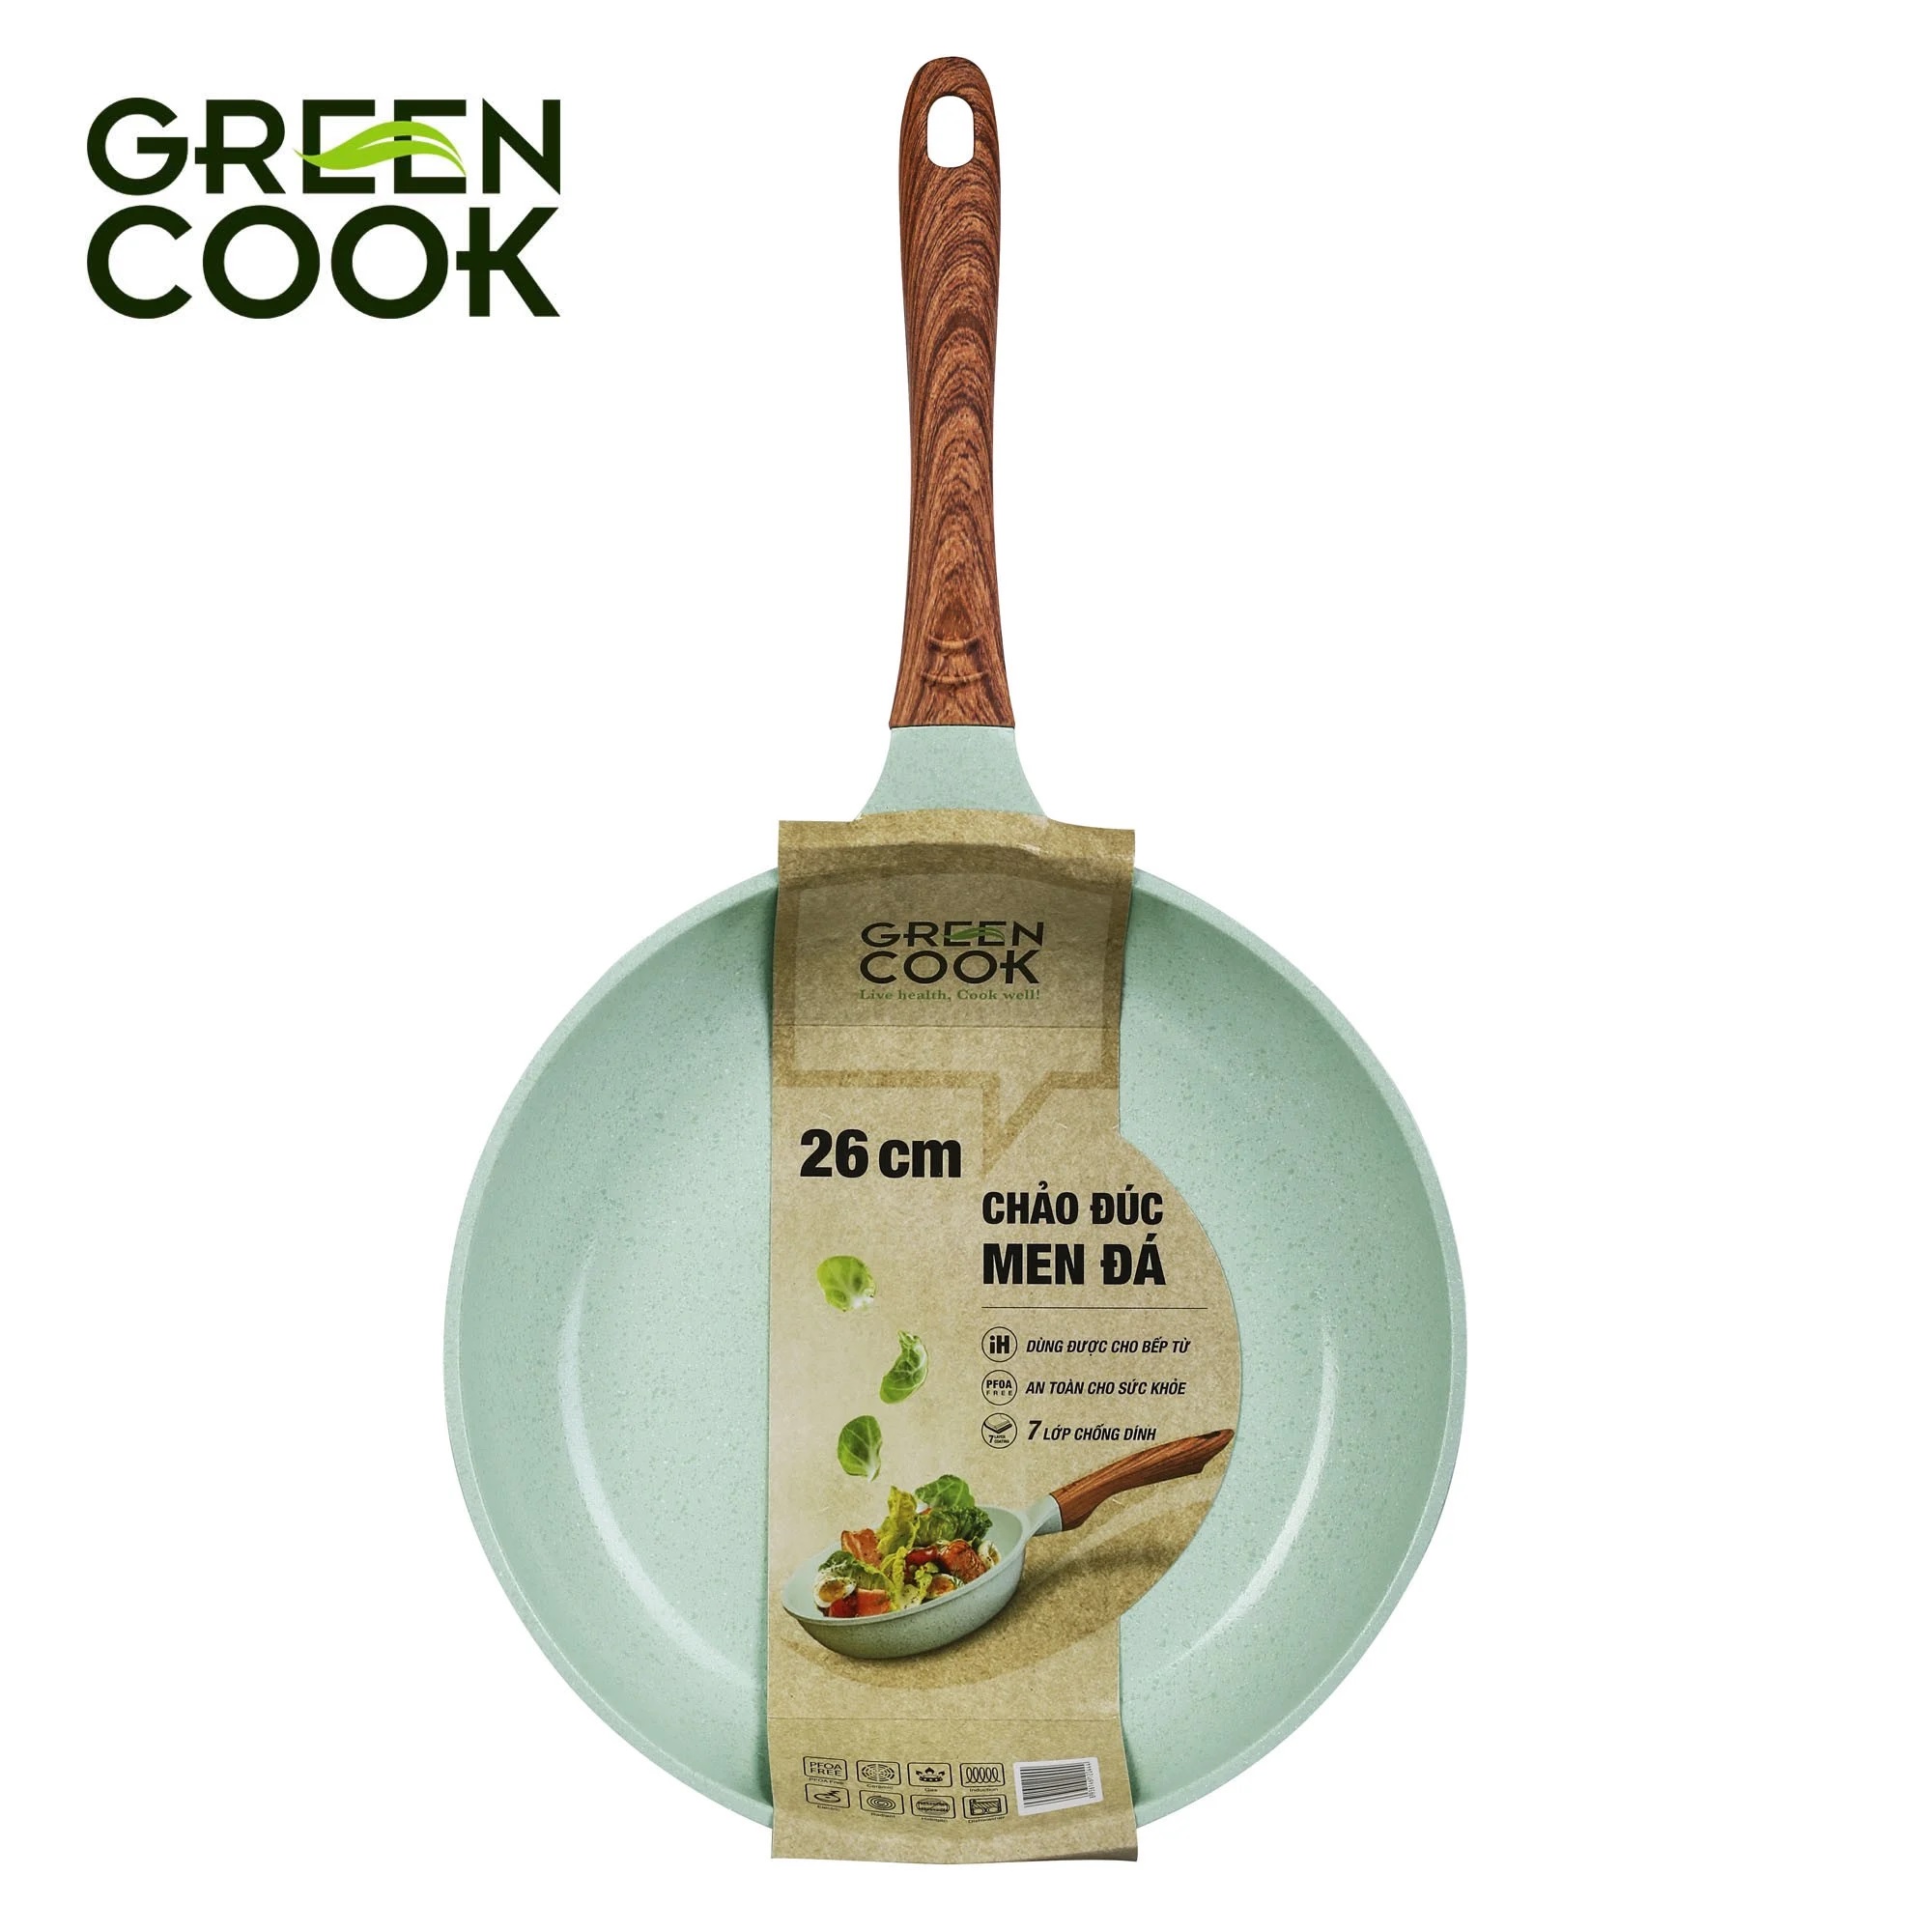 Chảo đúc chống dính 24cm sâu 6.2cm đáy từ 7 lớp men đá xanh ngọc sâu lòng Green Cook GCP06-24IH dùng cho mọi loại bếp